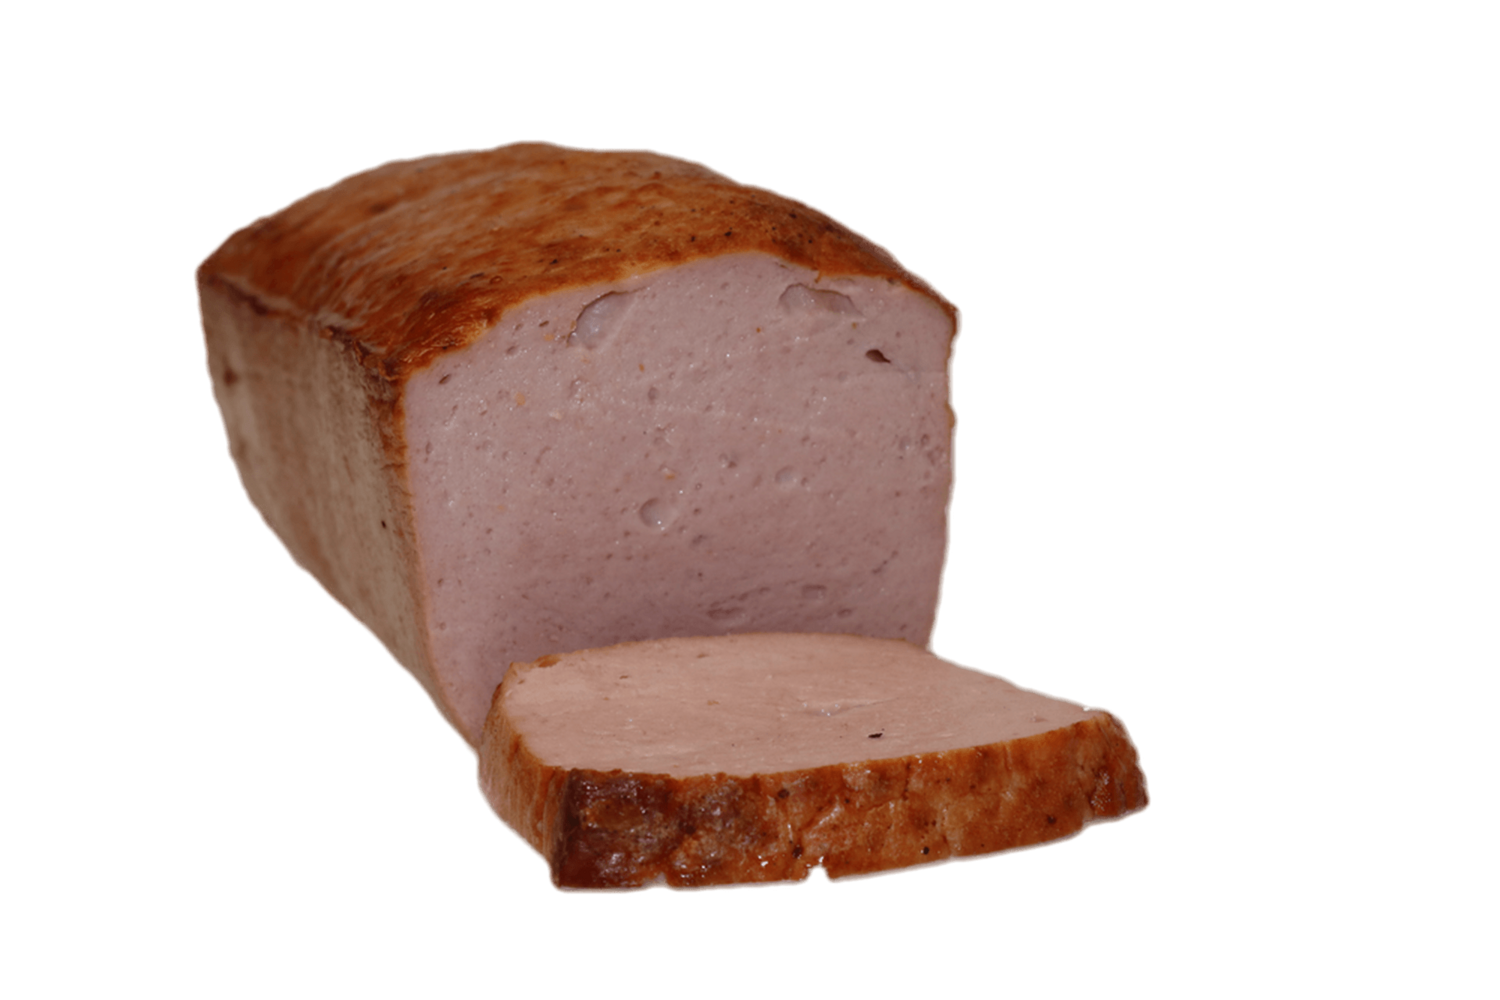 Heißer Fleischkäse im großen Laib - verschiedene Sorten
"2023 DLG prämiert", Welche Sorte hätten Sie gerne?: Feiner Fleischkäse á ca. 2,0 Kg (19,50 € / Kg)